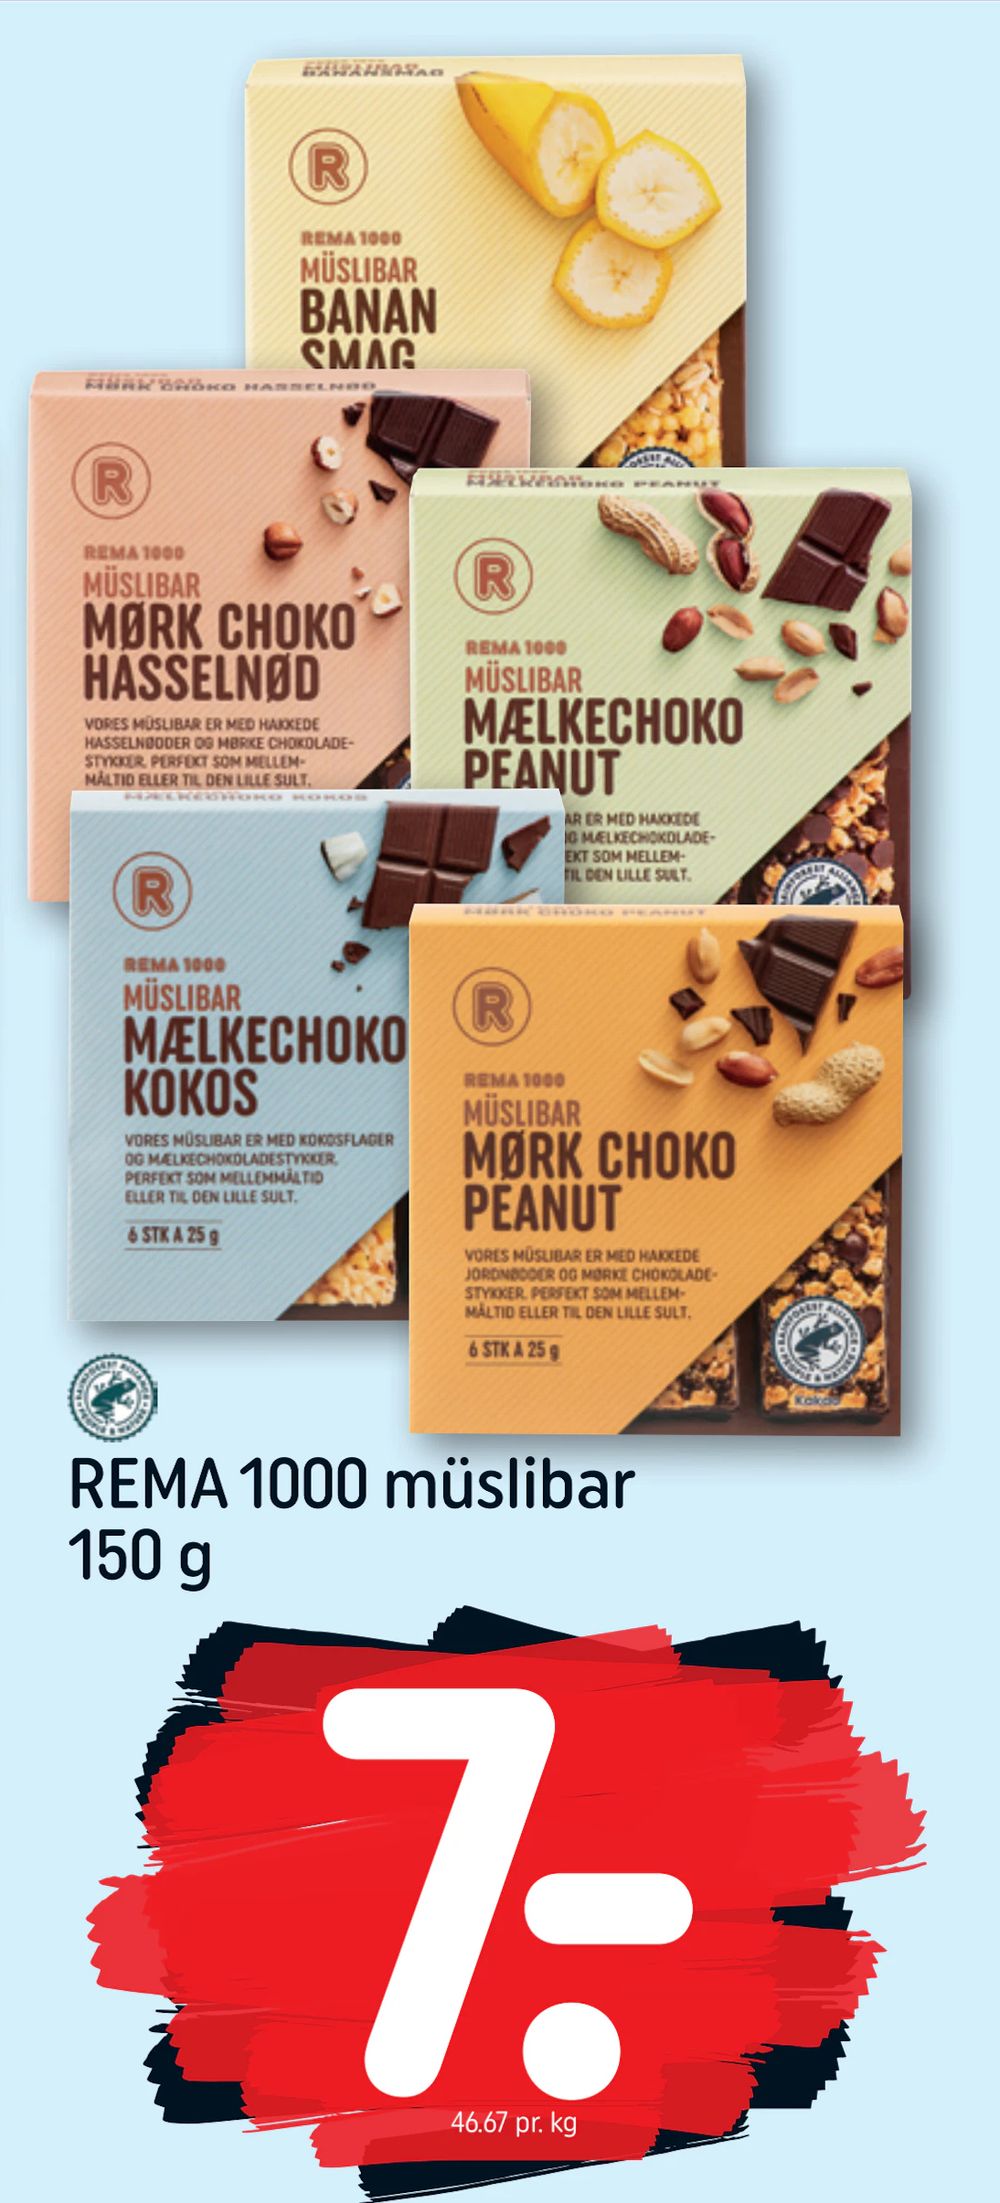 Tilbud på REMA 1000 müslibar 150 g fra REMA 1000 til 7 kr.